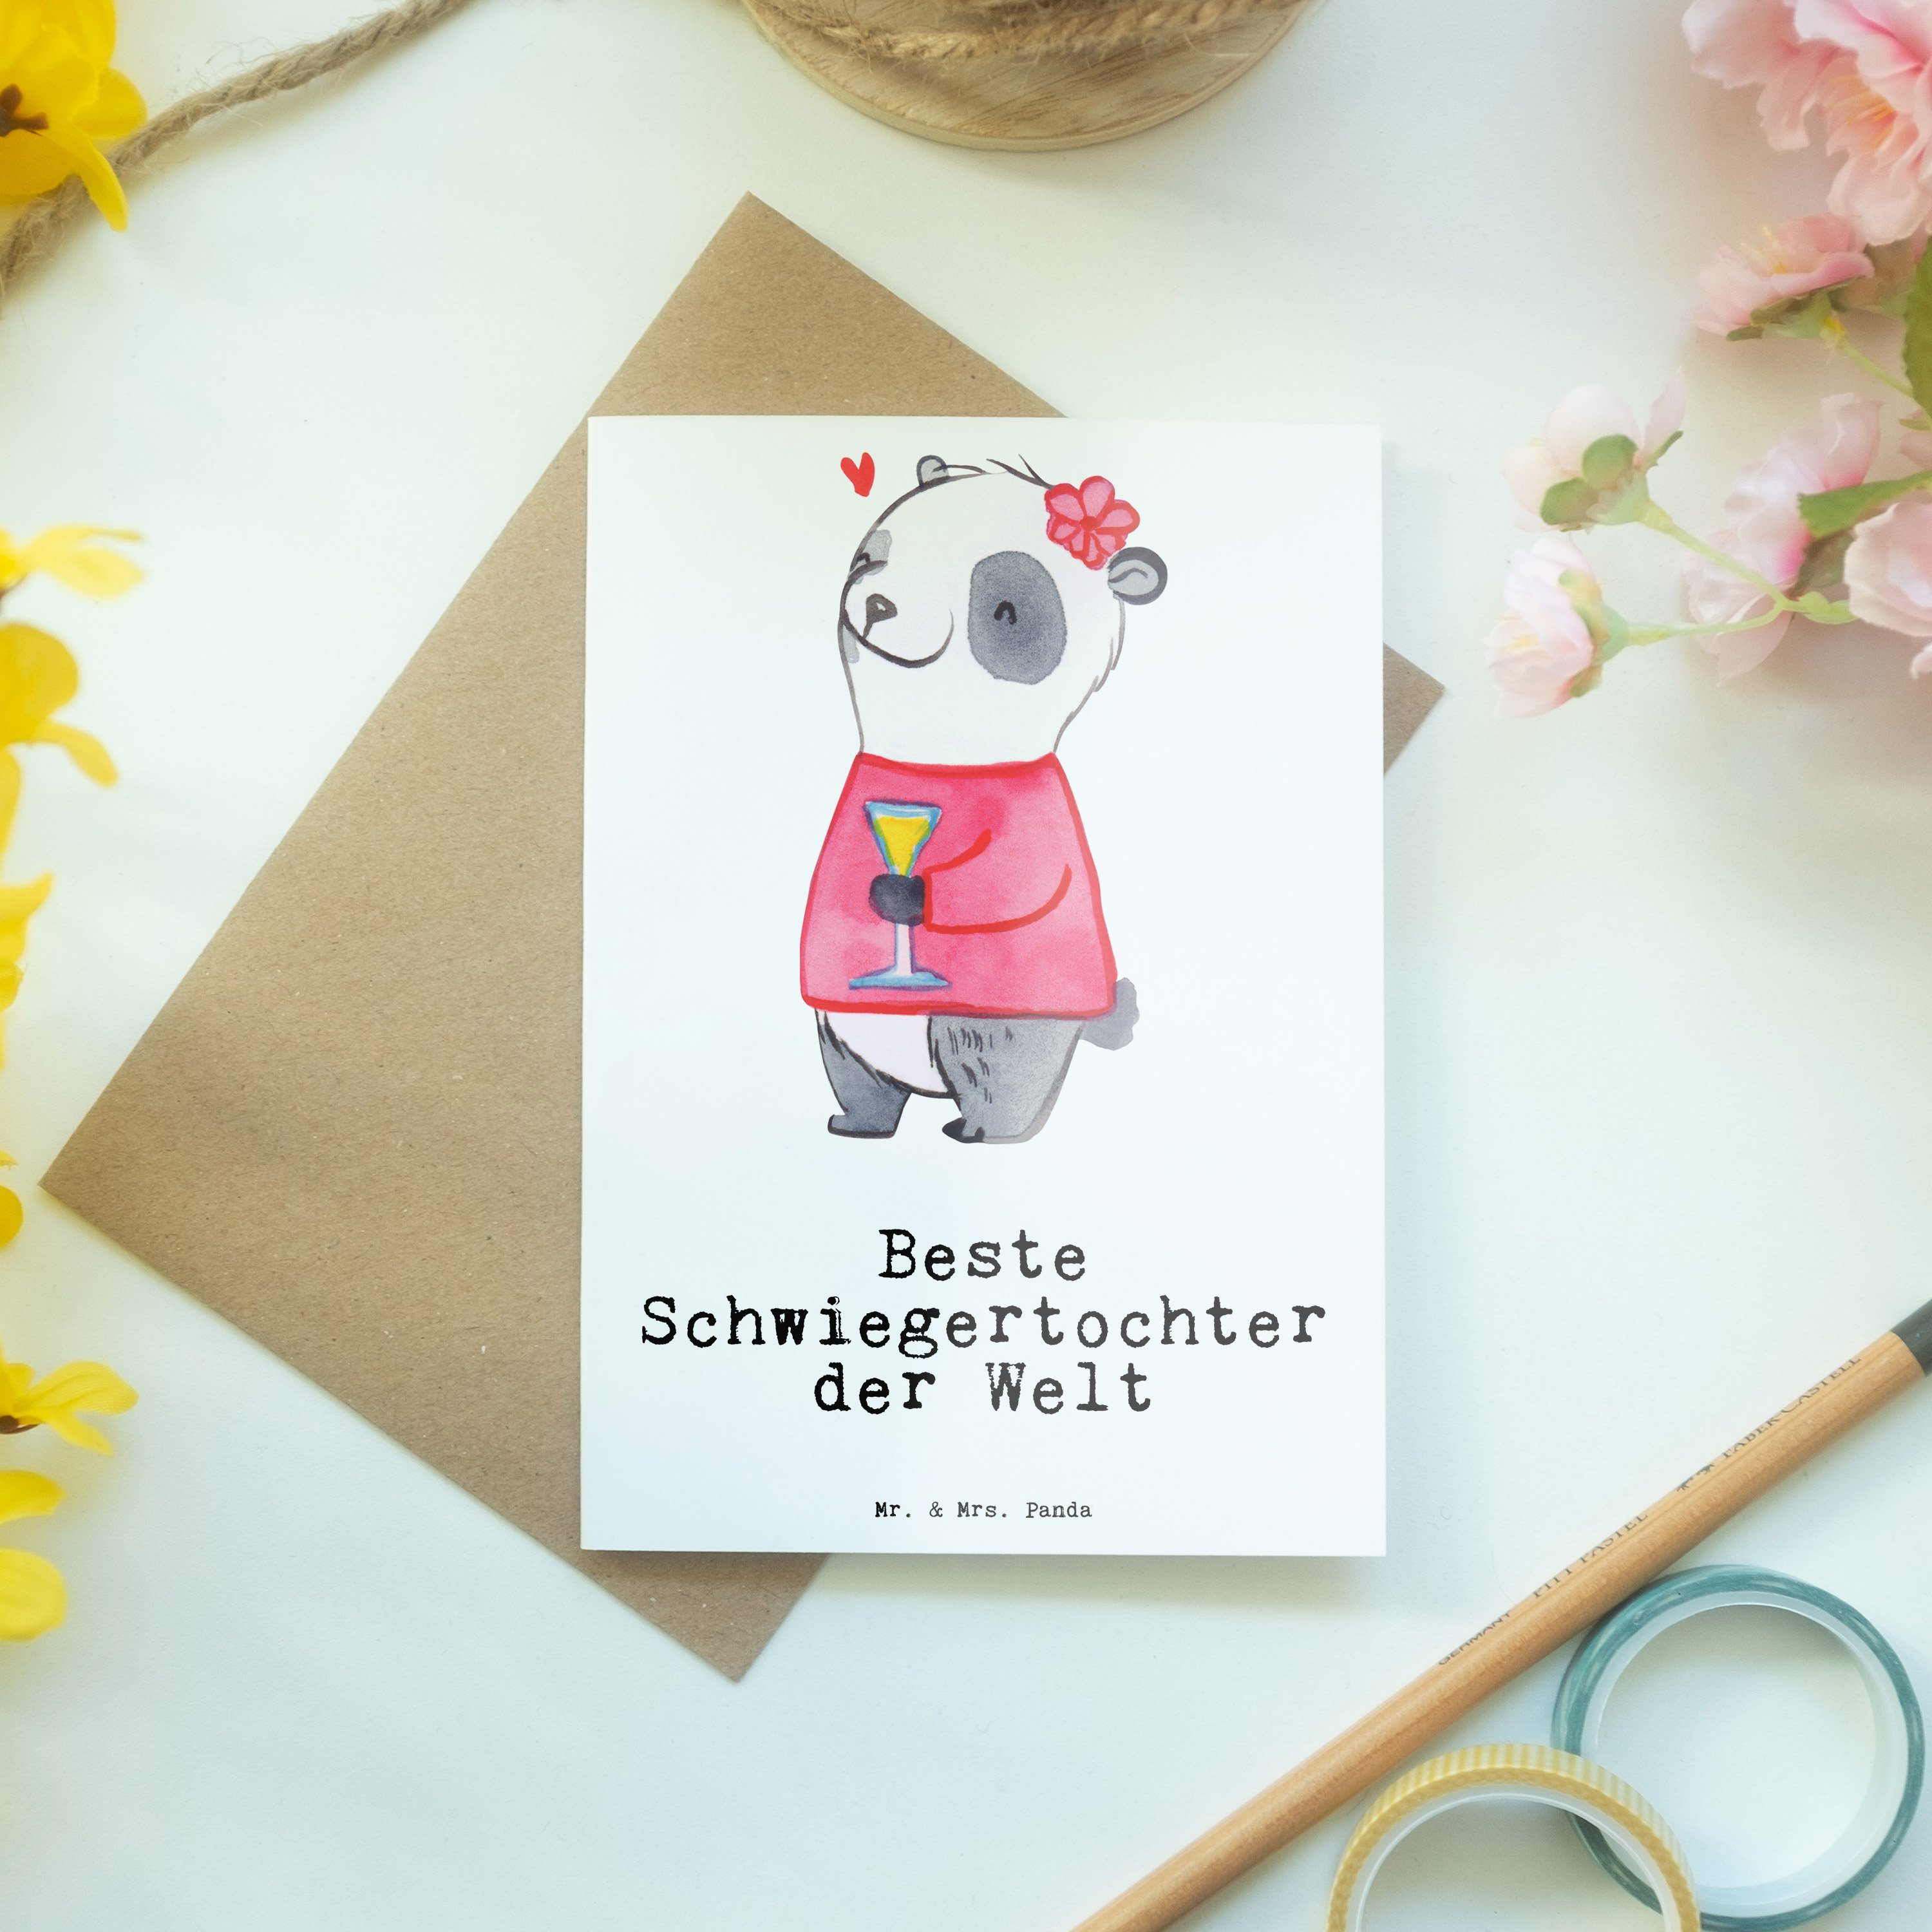 Mr. & Schwiegertochter Geschenk, Panda - Welt Grußkarte Beste Weiß Panda - Mrs. der angeheiratet